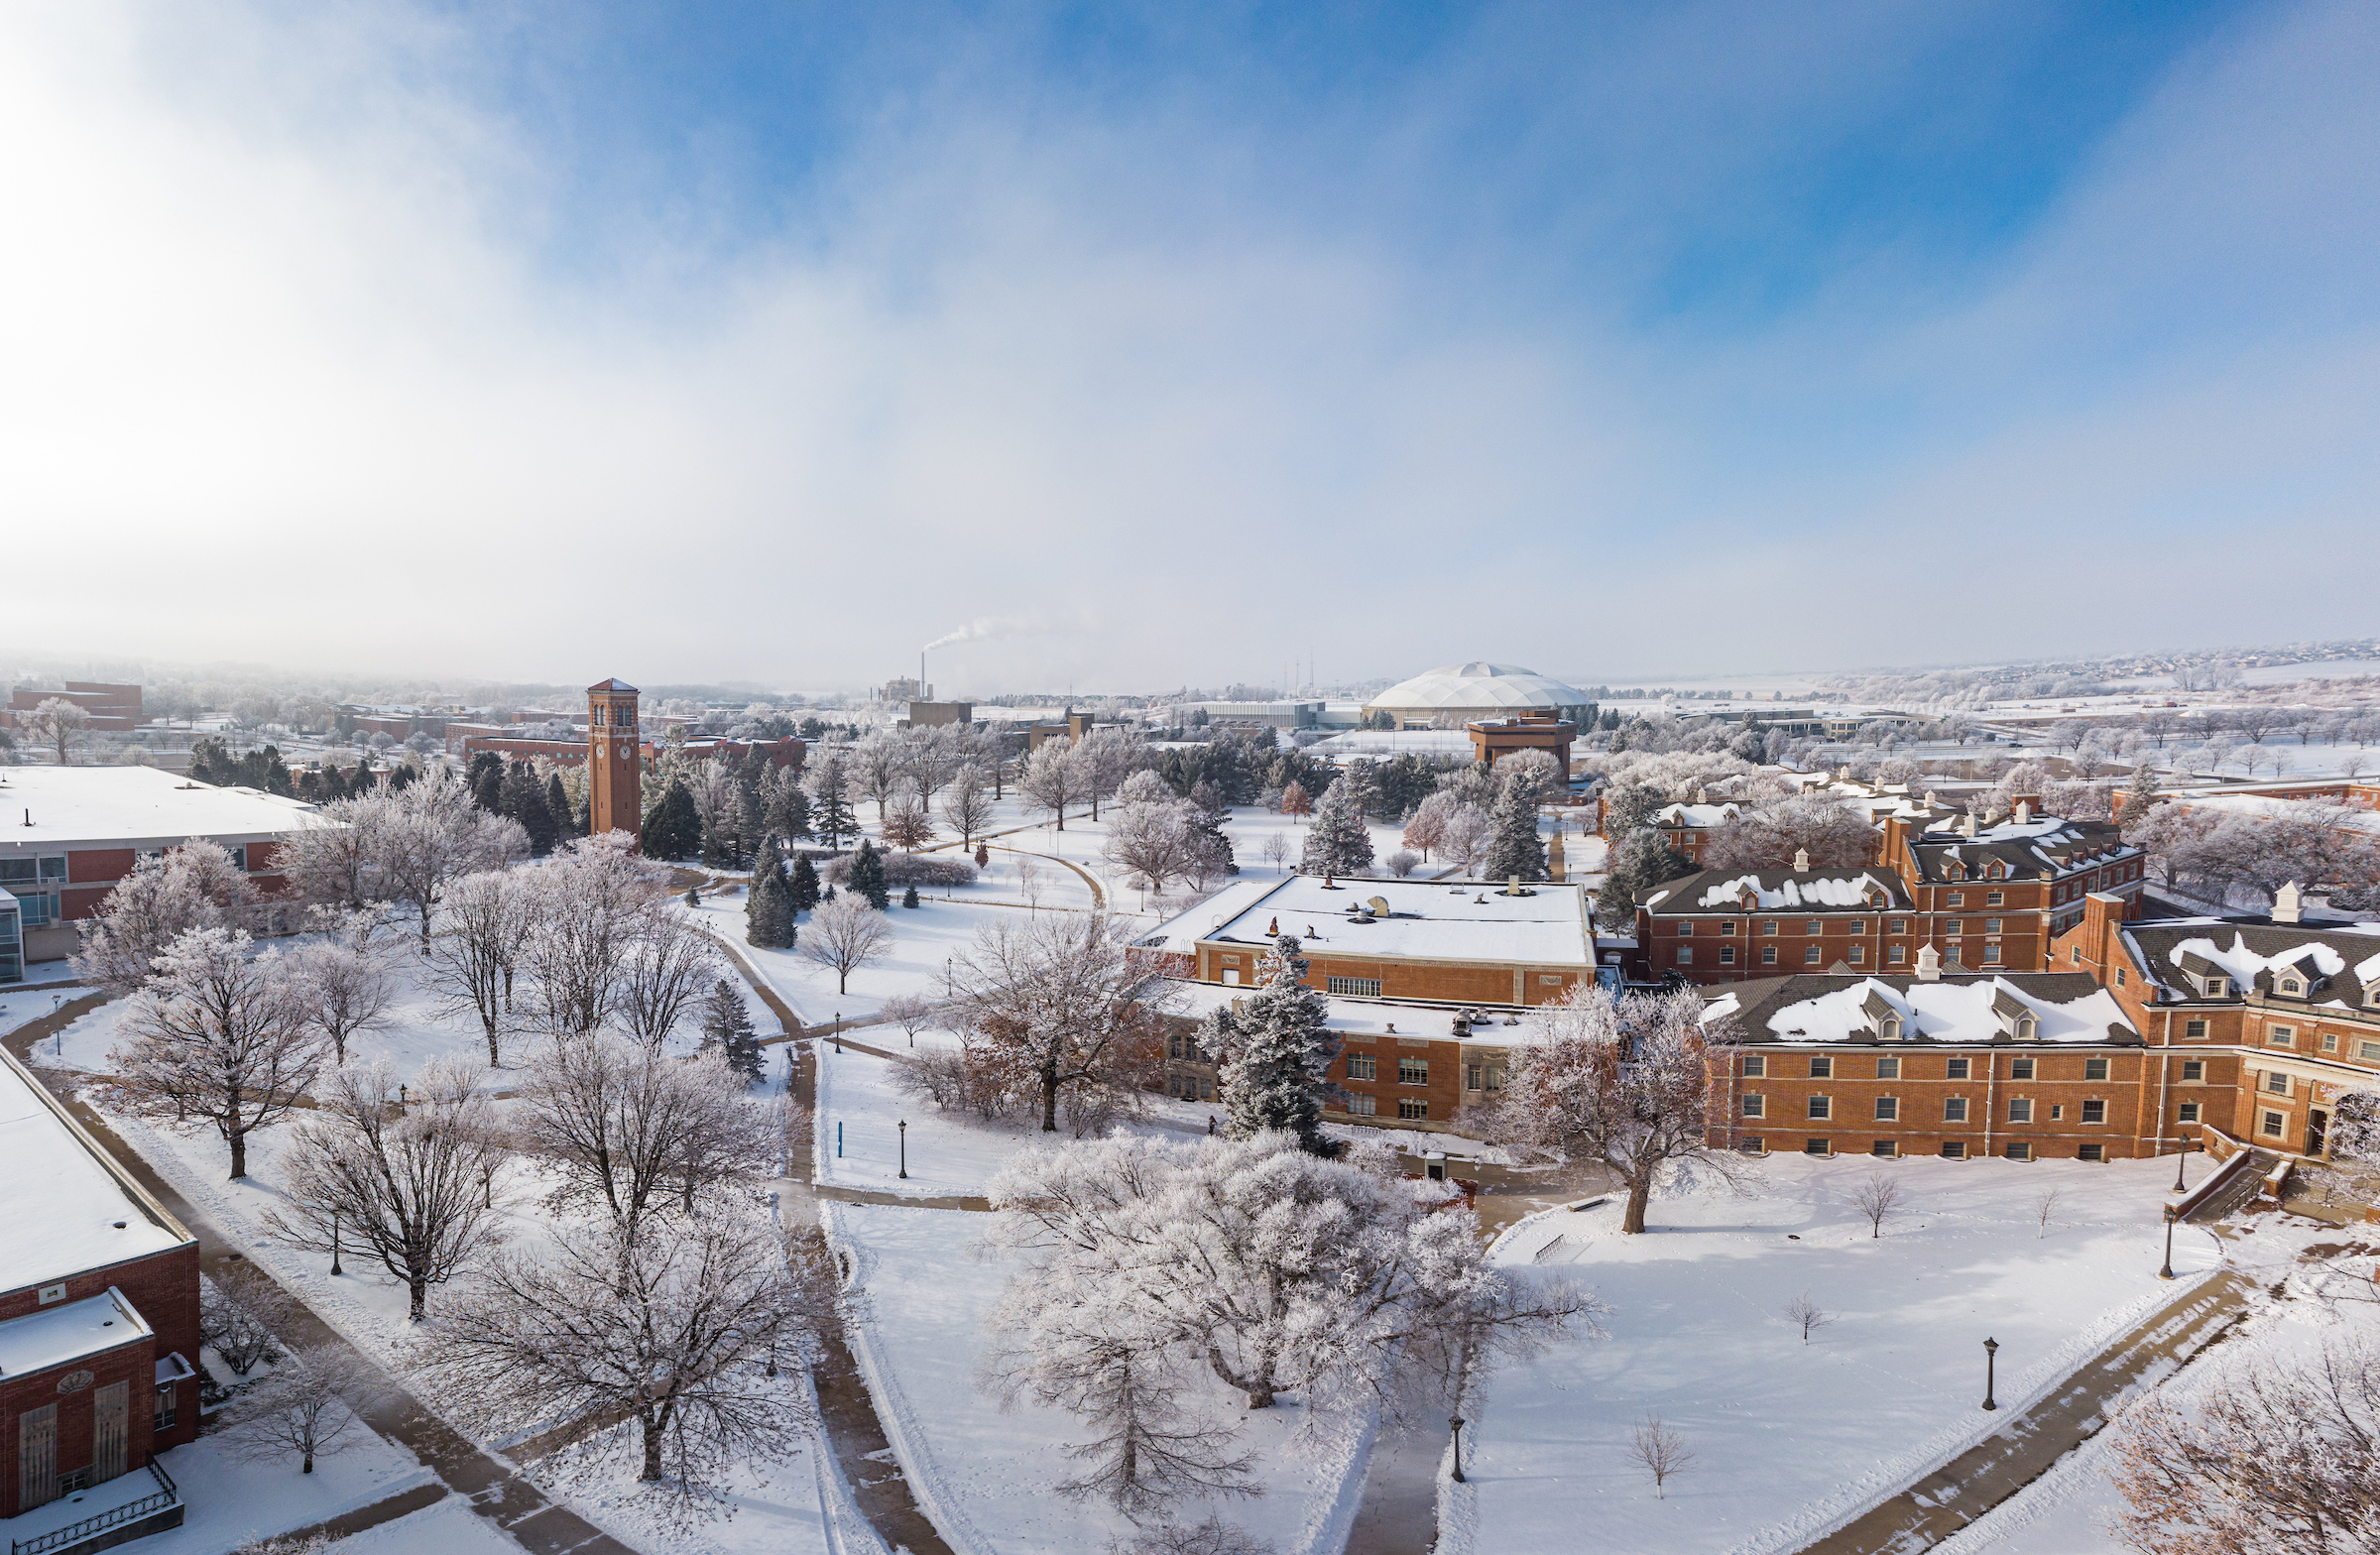 winter campus scene